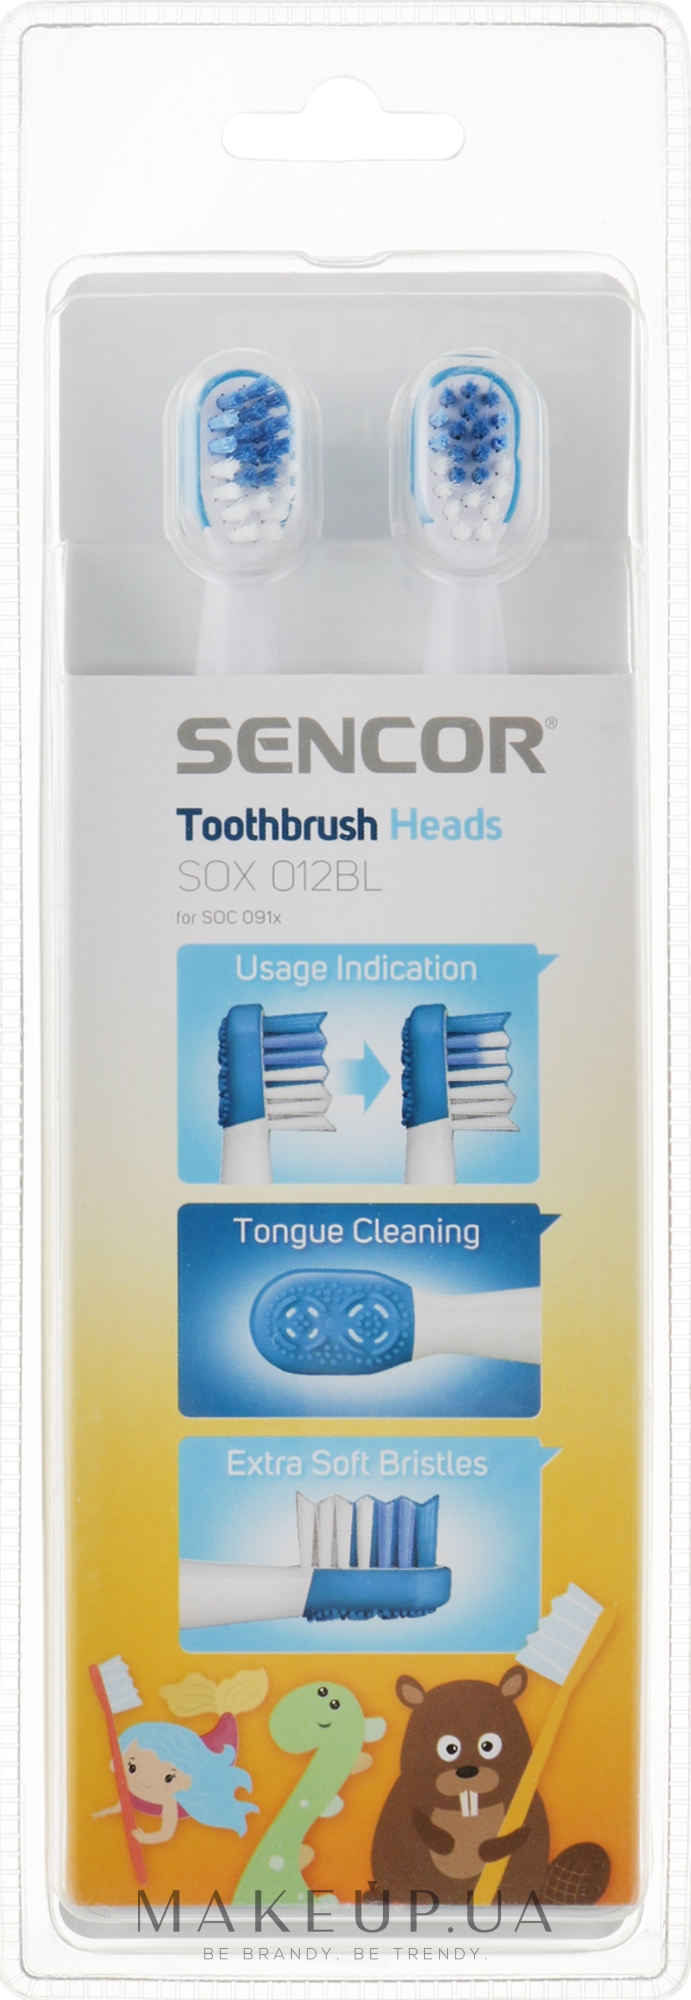 Насадка для детской электрической зубной щетки SOX012BL, 6-12 лет, 2 шт - Sencor — фото 2шт